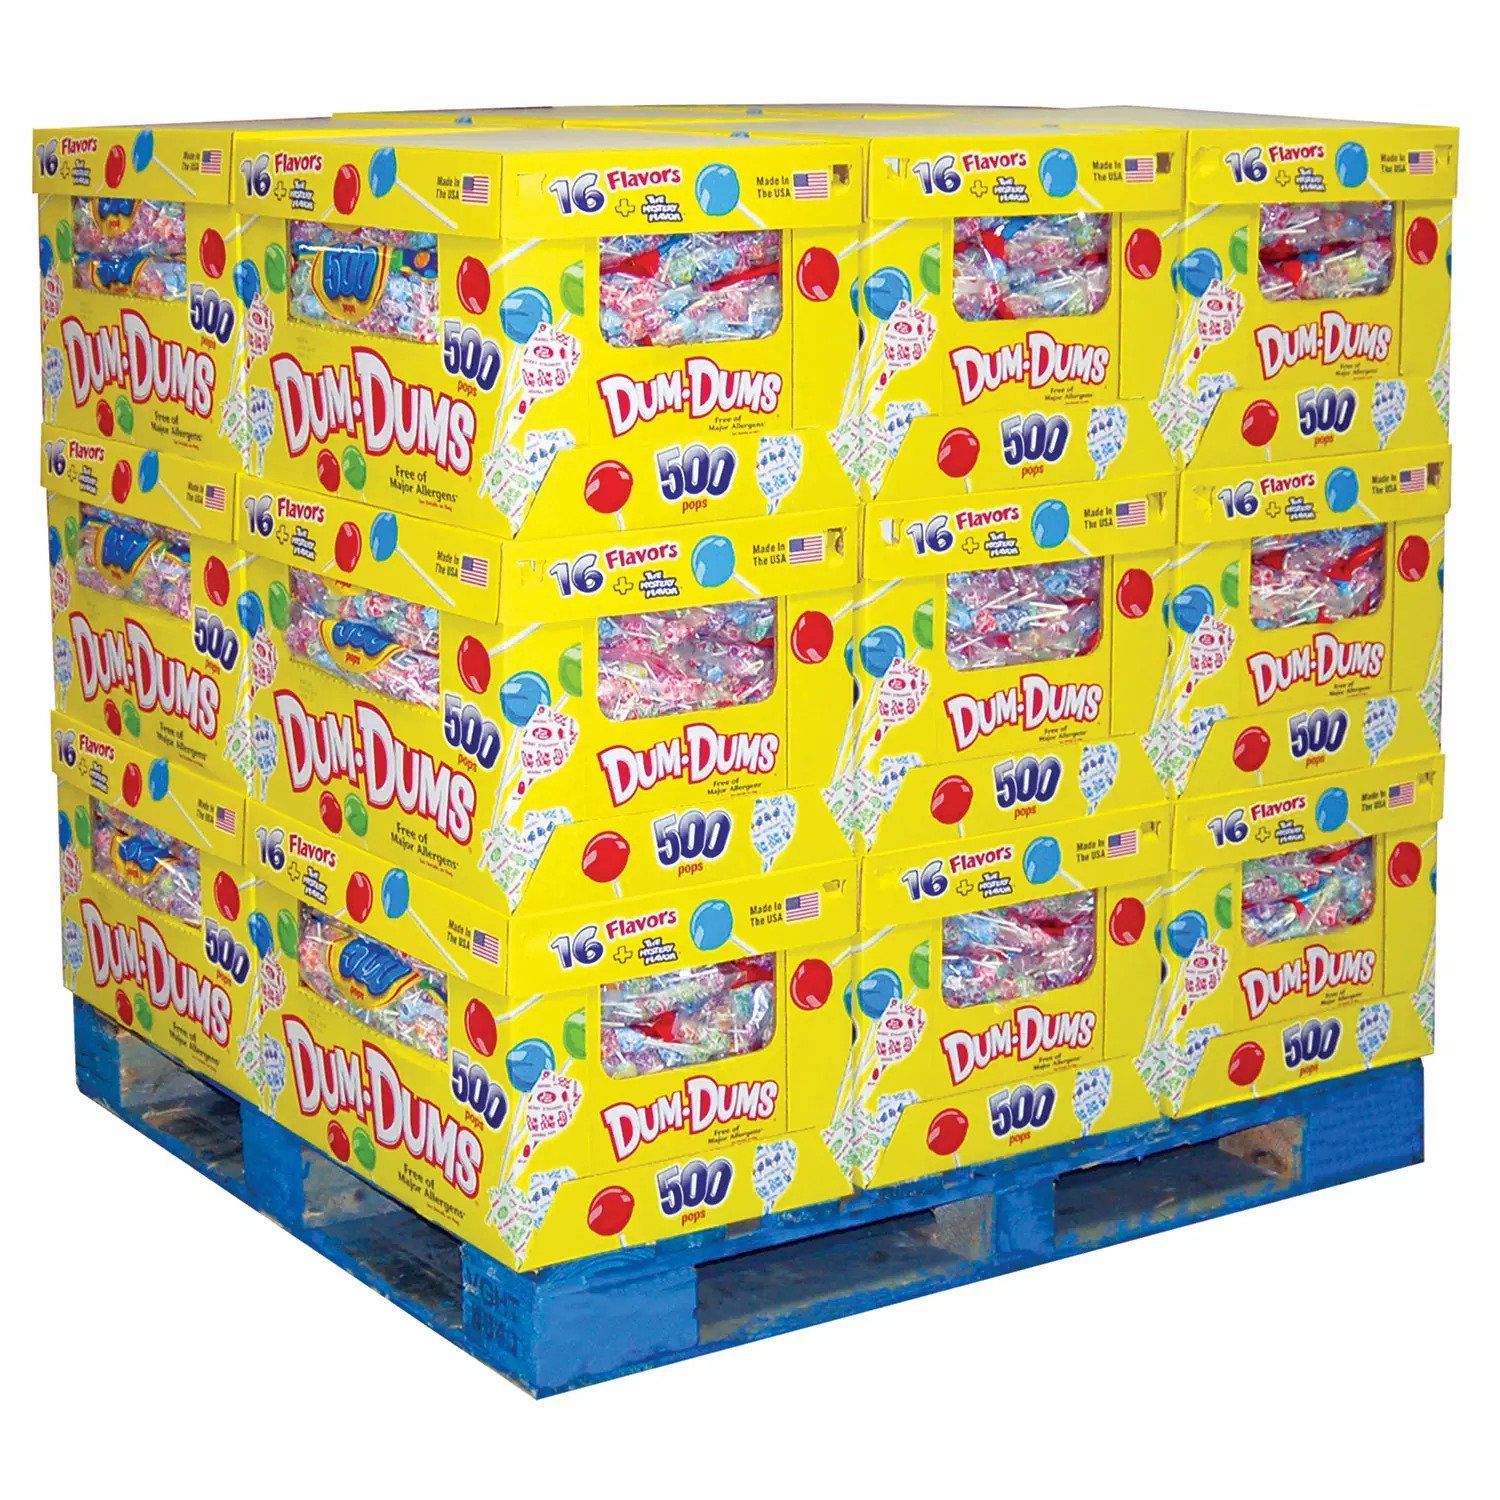  Túi Kẹo Mút Dum-Dums Original Pops 500 Cây (2.44kg) Hướng Tự Nhiên_Mỹ 